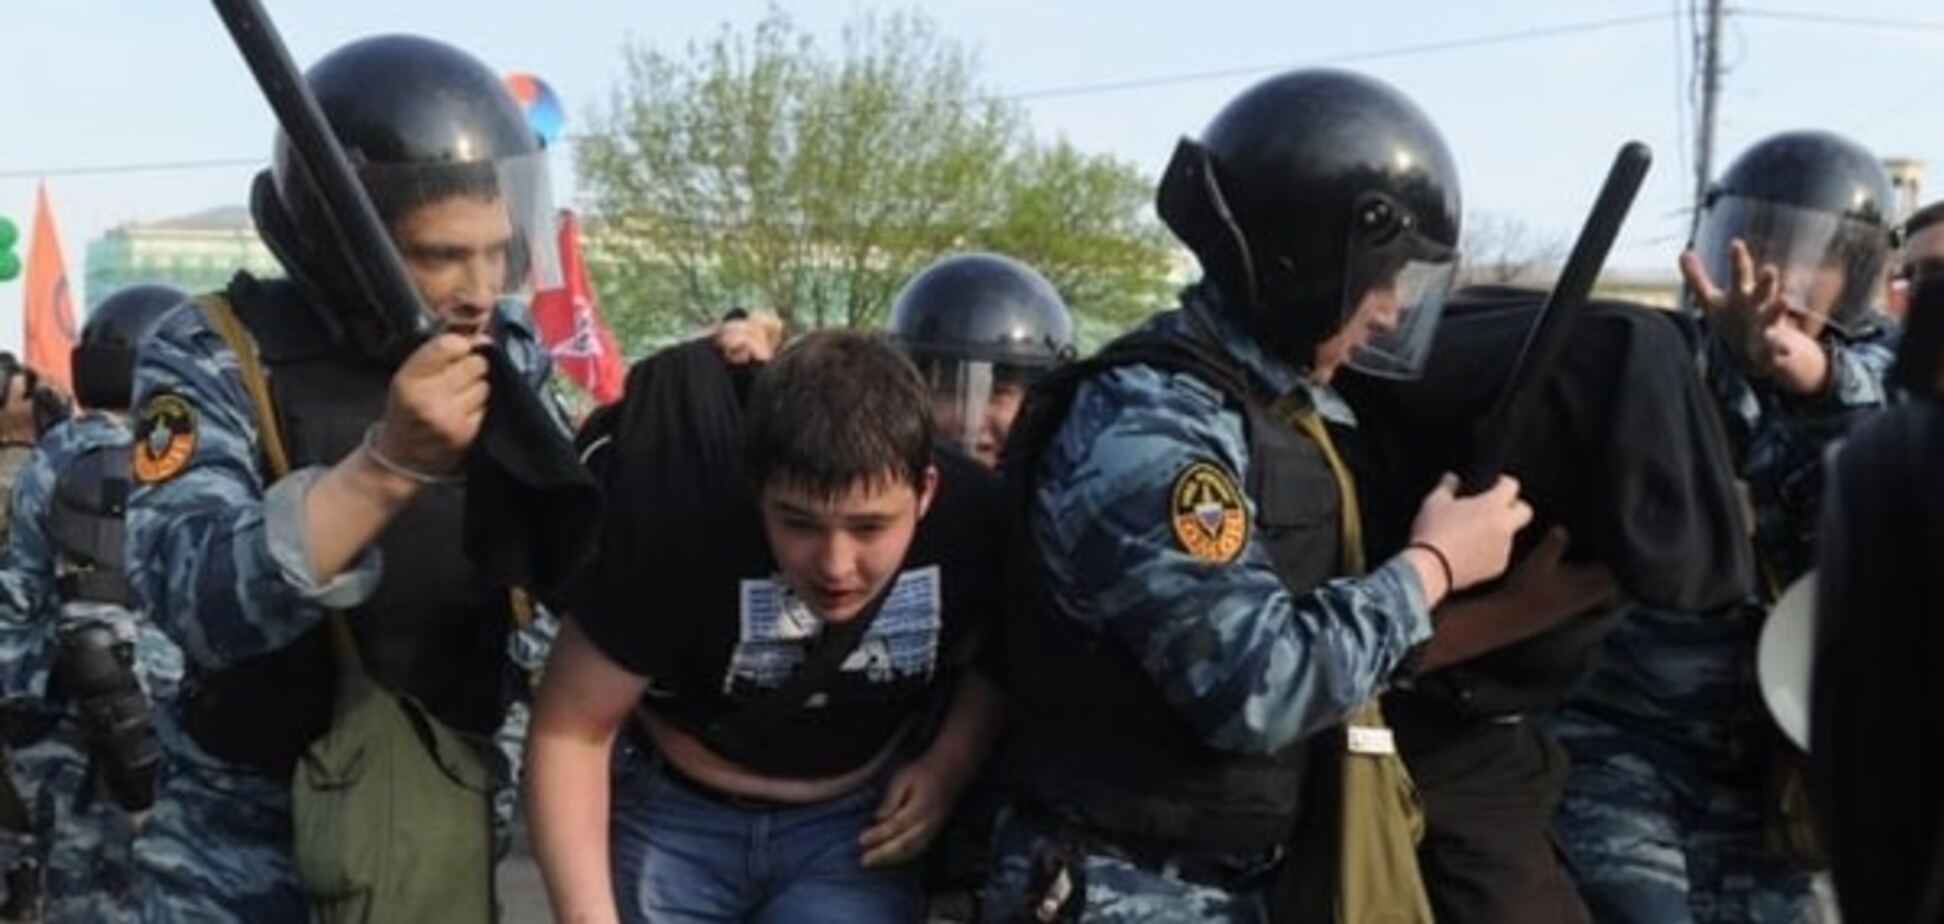 'Было очень страшно': в Москве толпа ОМОНа избила детей на фестивале. Опубликованы фото и видео